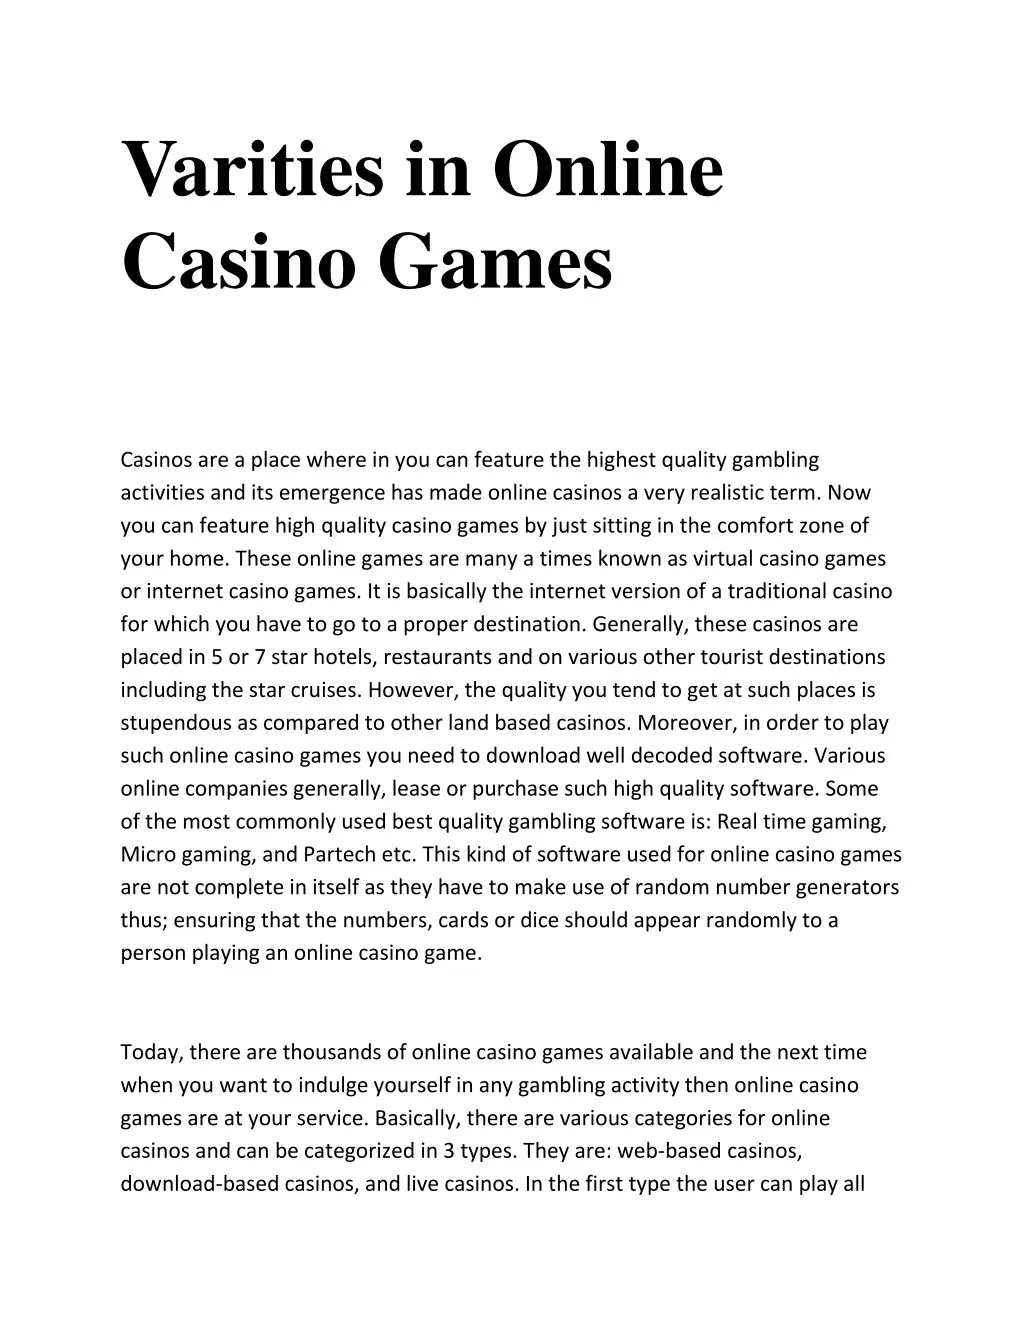 varities in online casino games